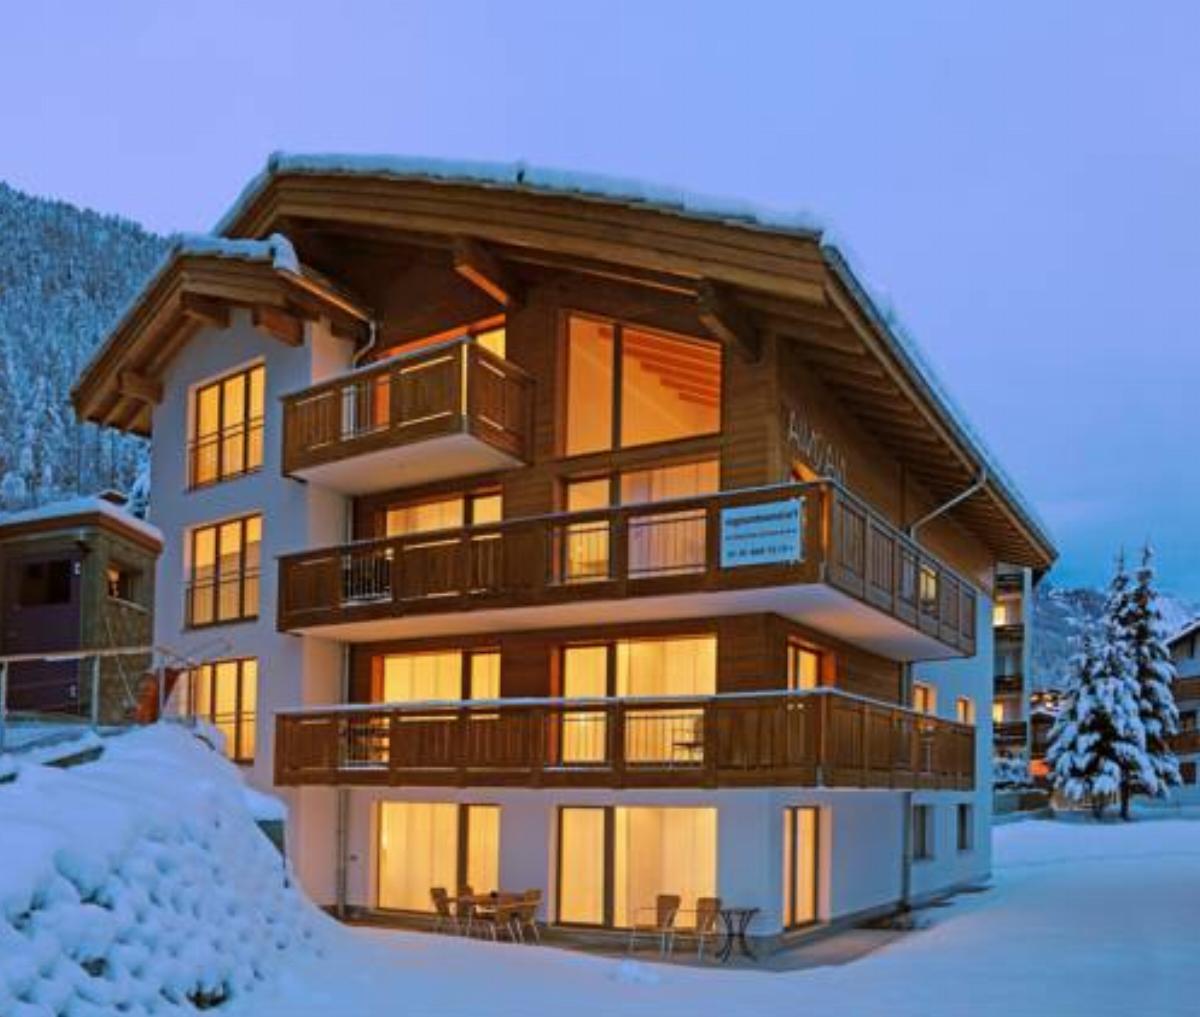 Haus Narnia Hotel Zermatt Switzerland